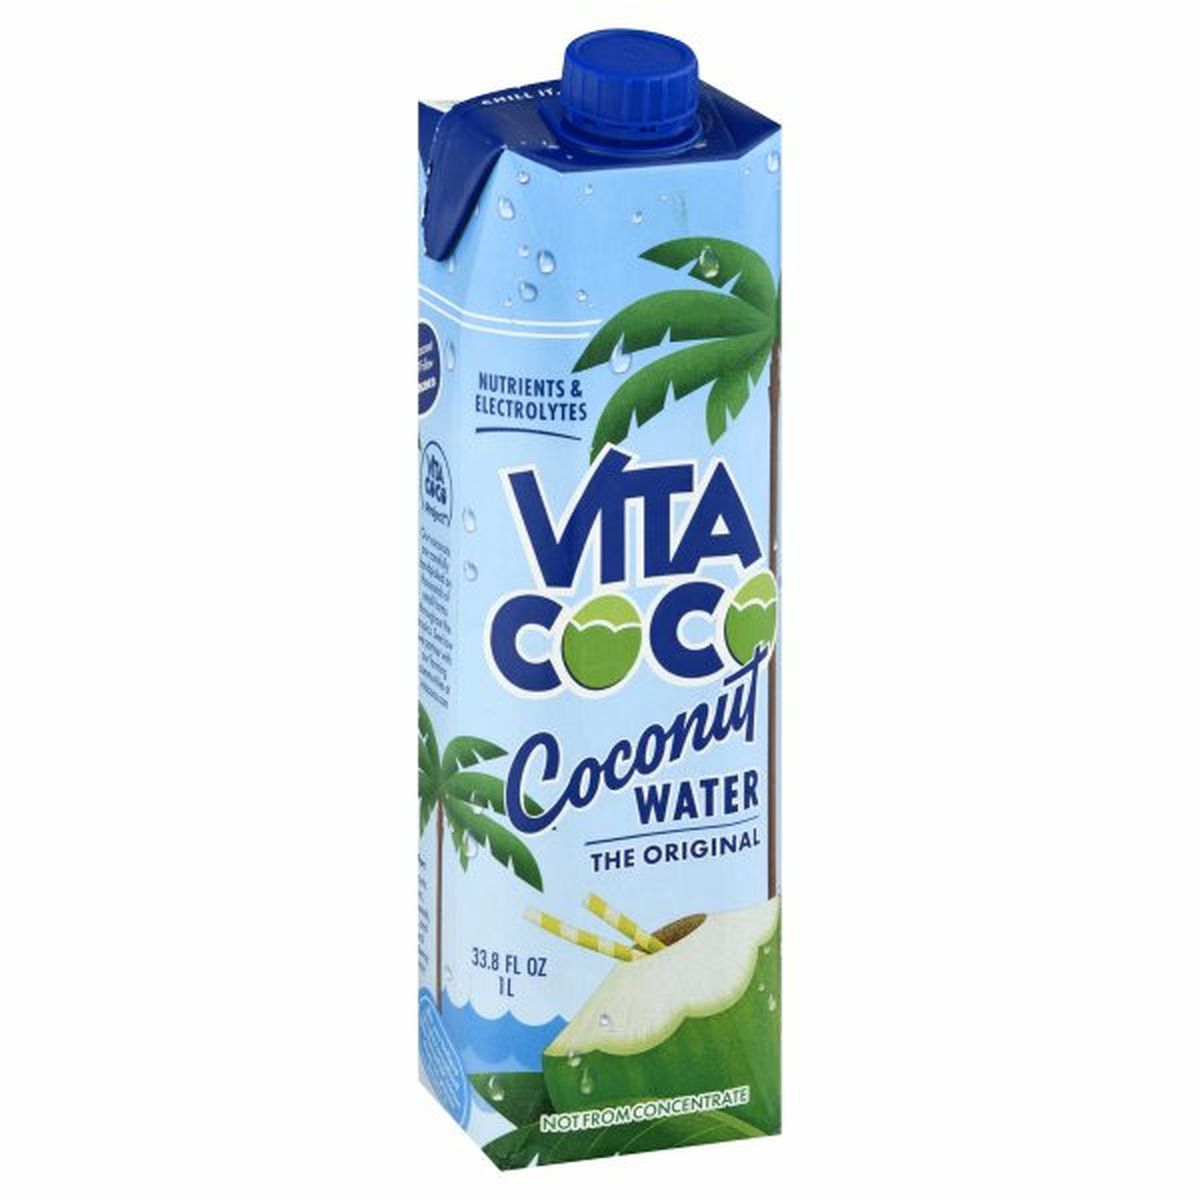 Calories in Vita Coco Coconut Water, The Original